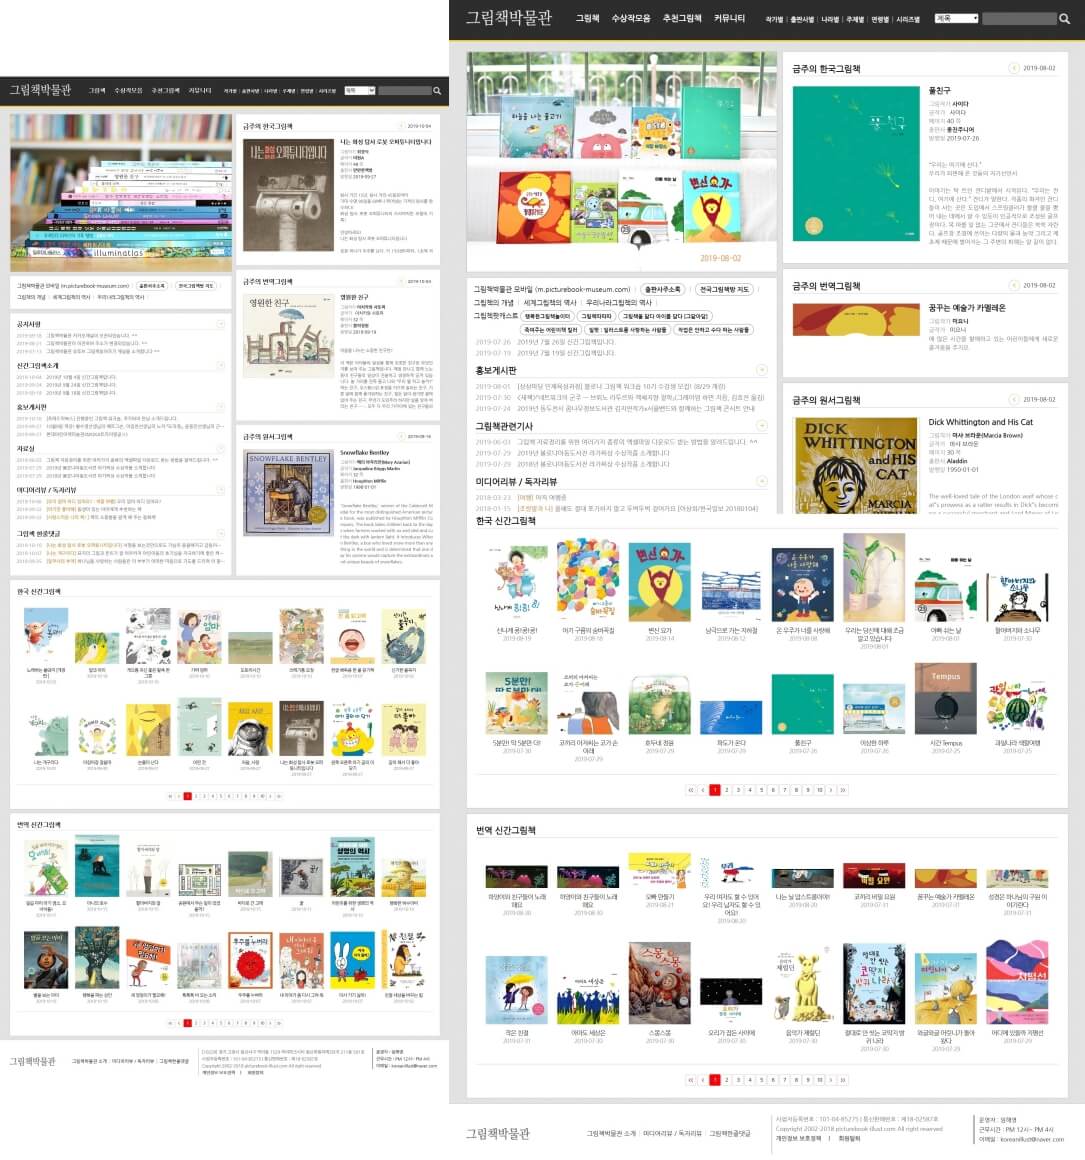 매일 업데이트되는 그림책박물관의 인터넷 홈페이지 초기화면